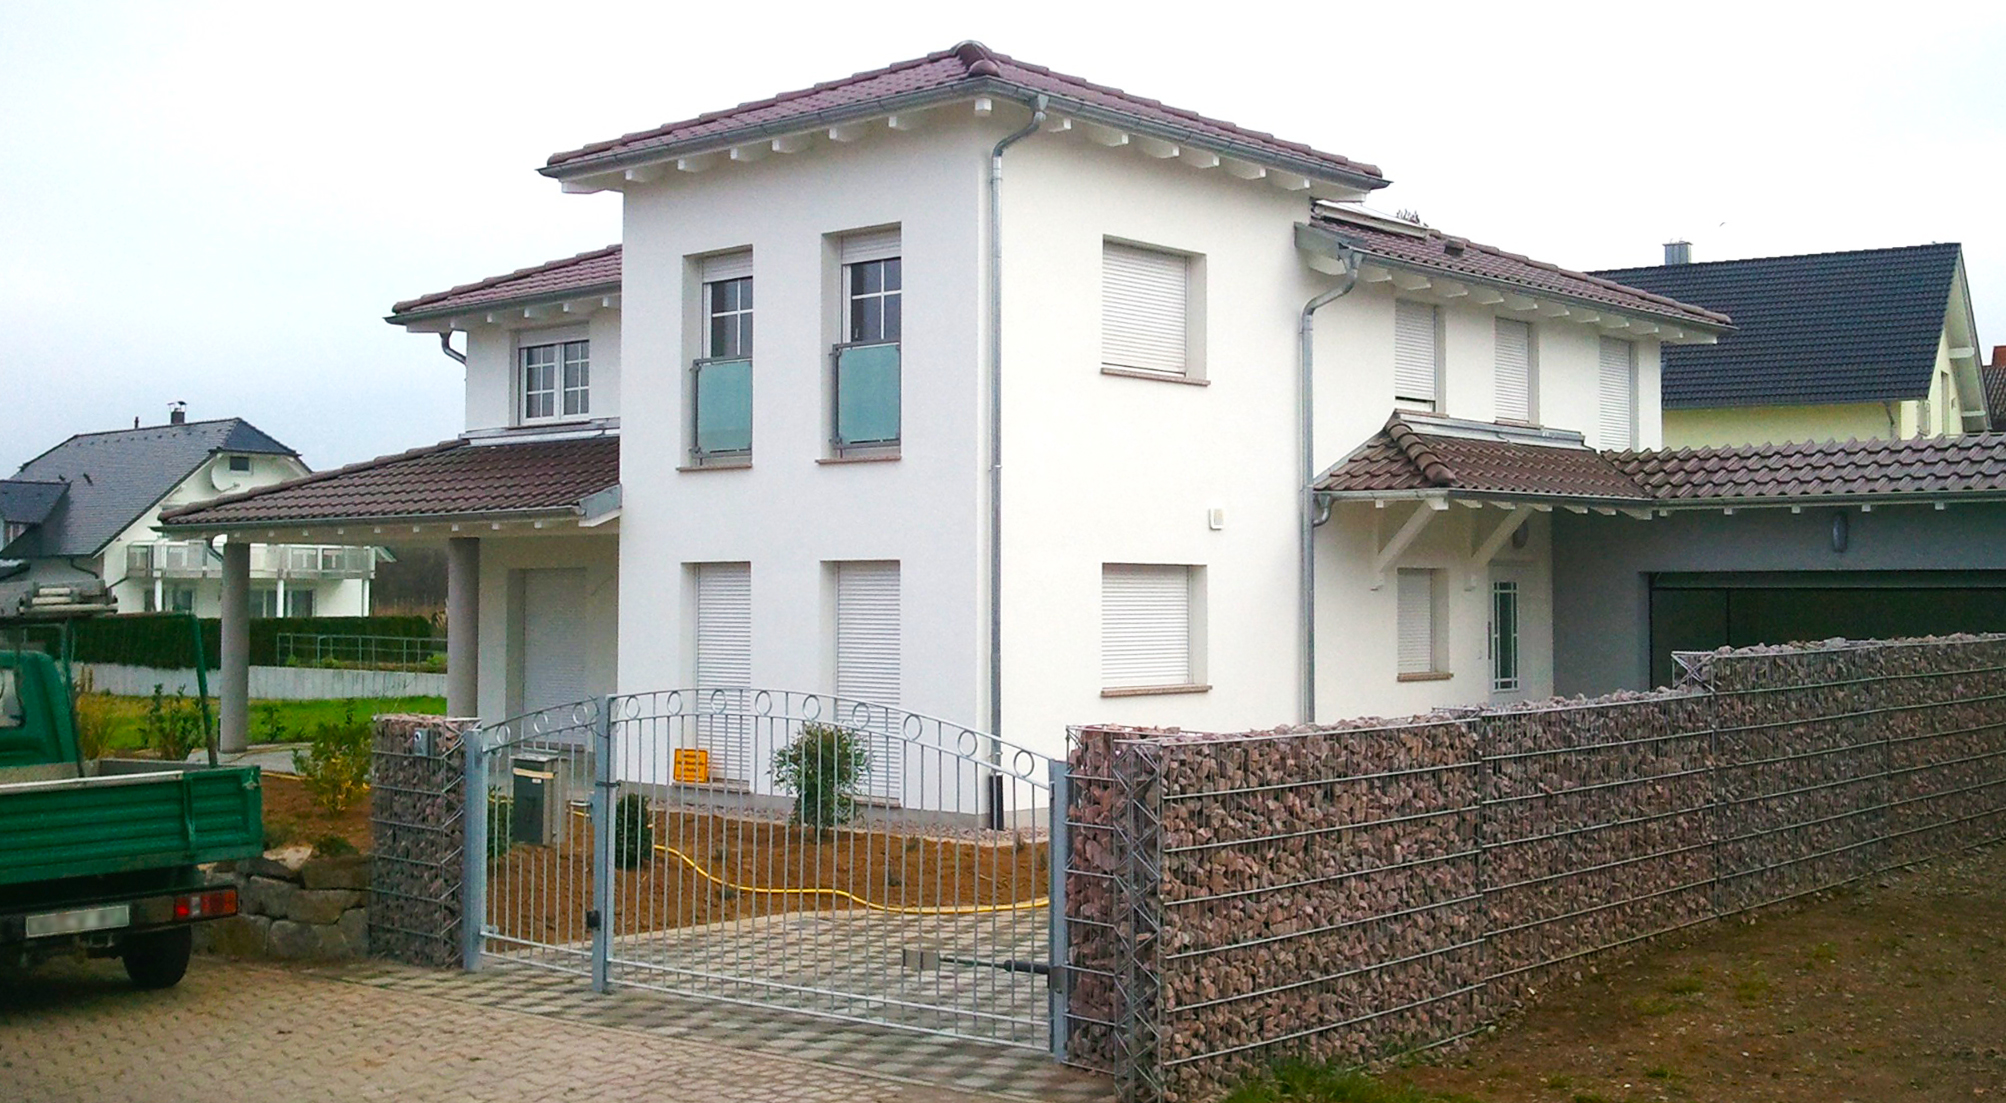 Einfamilienwohnhaus, Sanierung und Fertigstellung, Baujahr: 2012